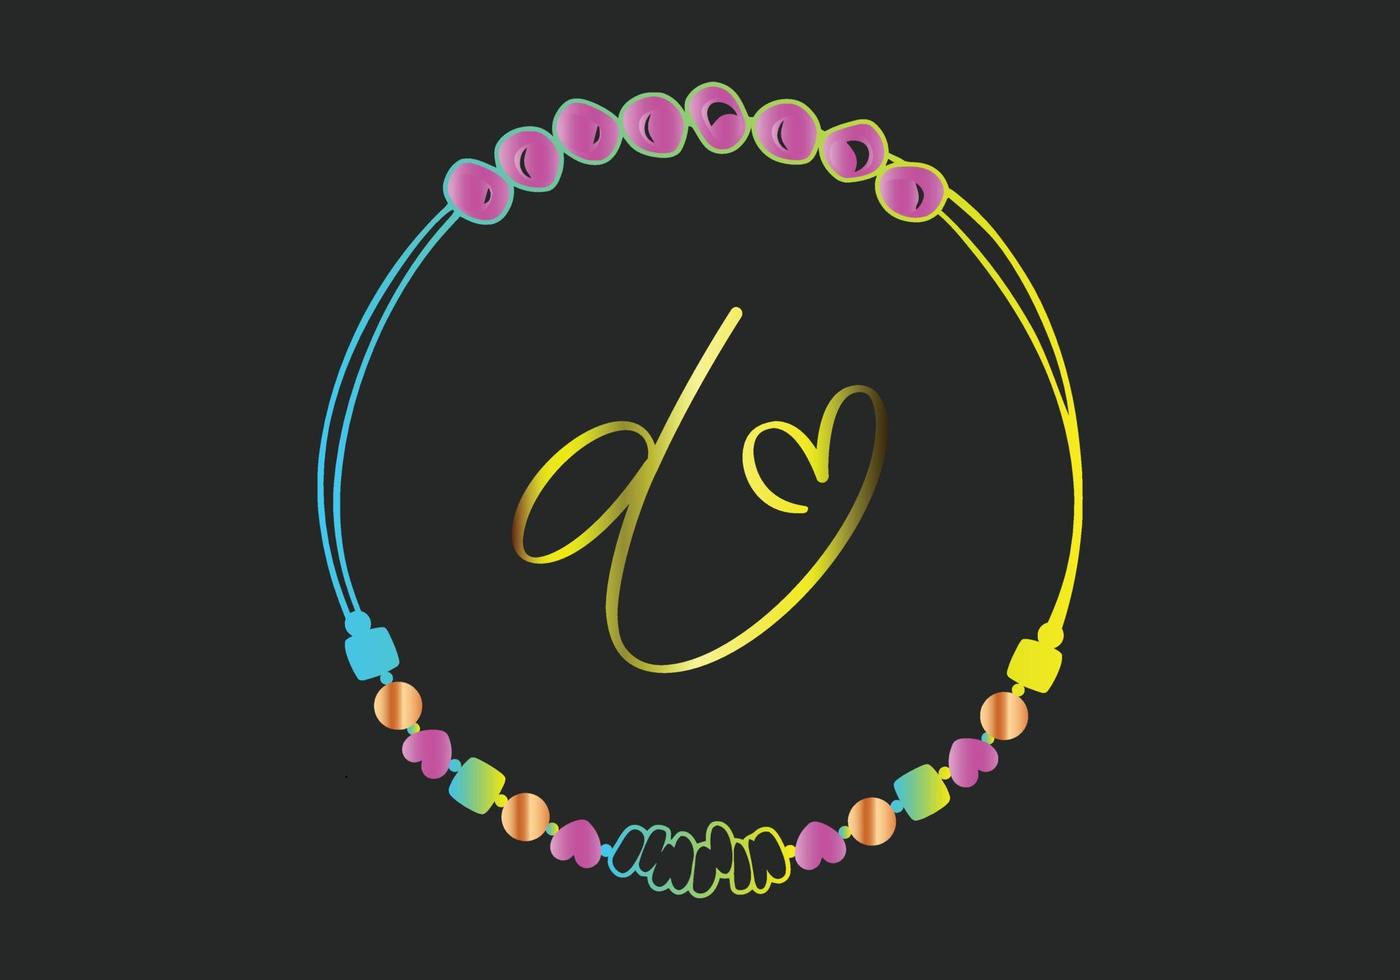 D Monograms bracelet design, jewelry, wedding vector template